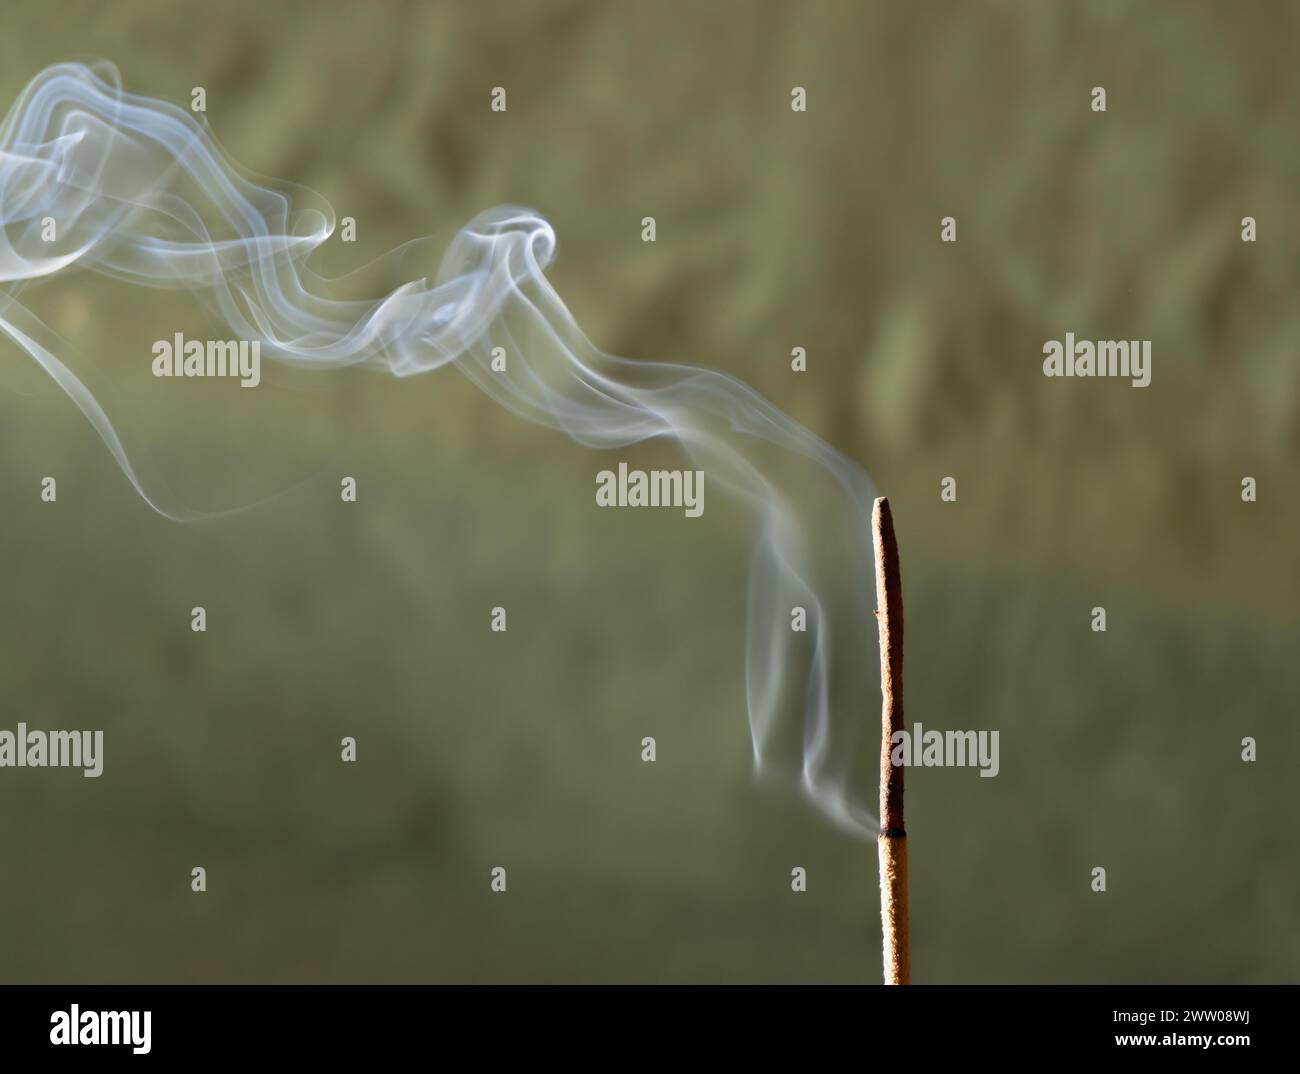 Fumo proveniente dall'incenso che gira su uno sfondo verde. Foto Stock